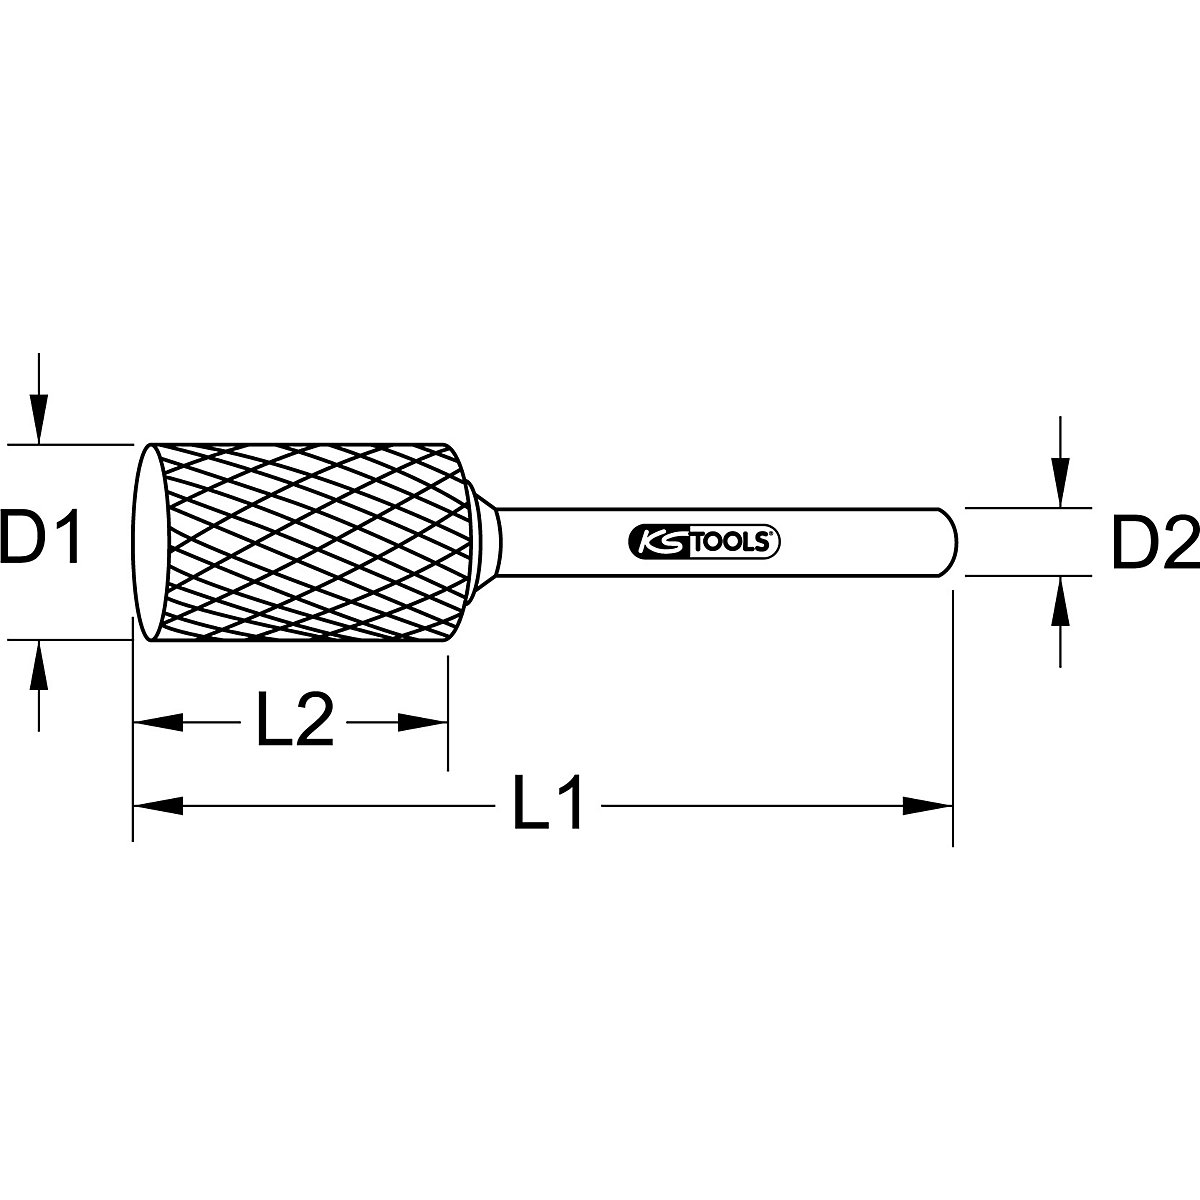 Punta de fresado cilíndrica HM forma A – KS Tools (Imagen del producto 2)-1